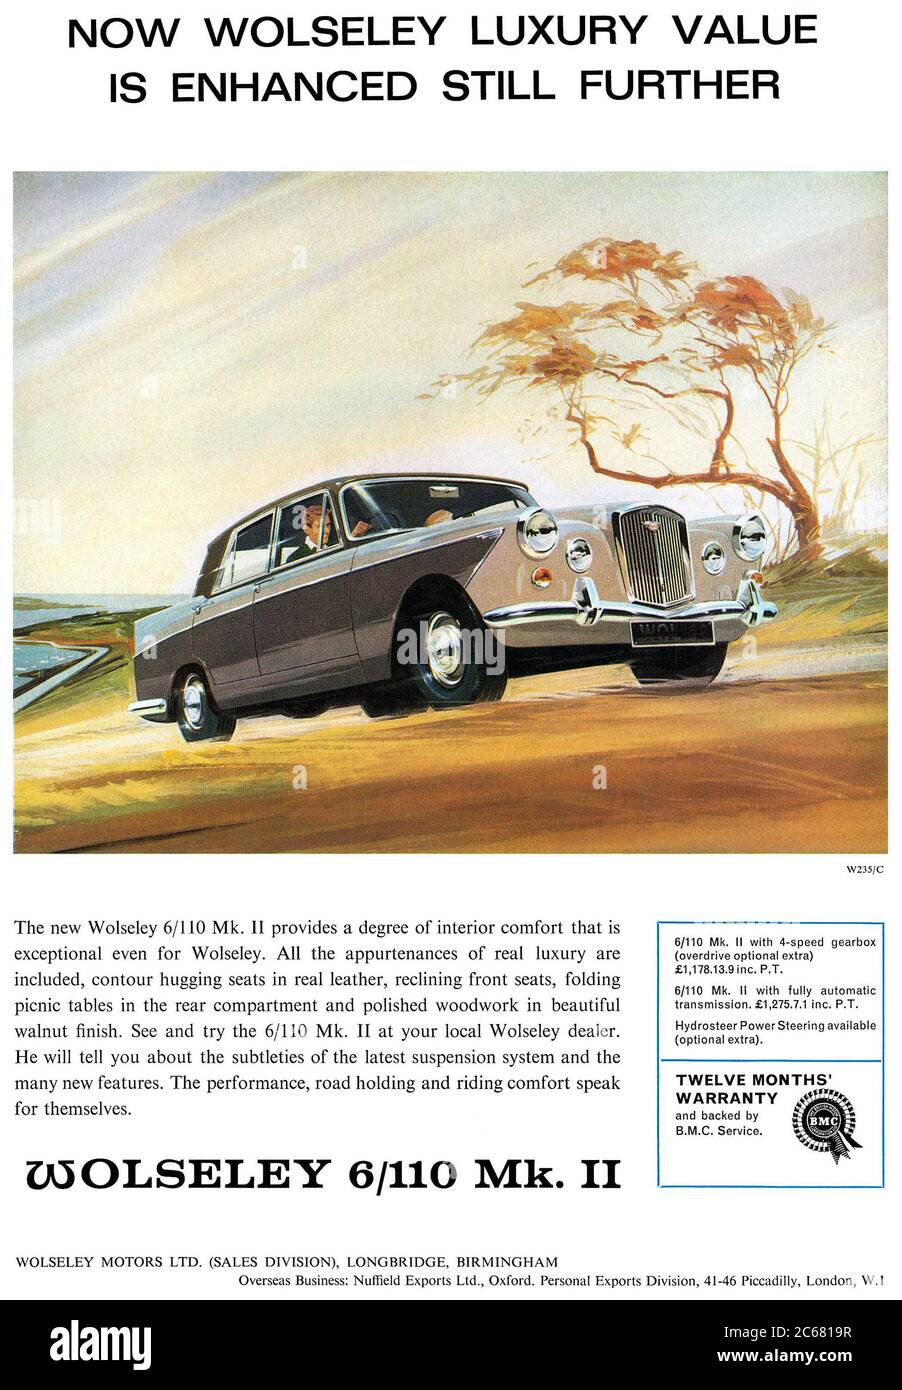 1965 pubblicità britannica per la Wolseley 6/110 Mk. II automobile. Foto Stock